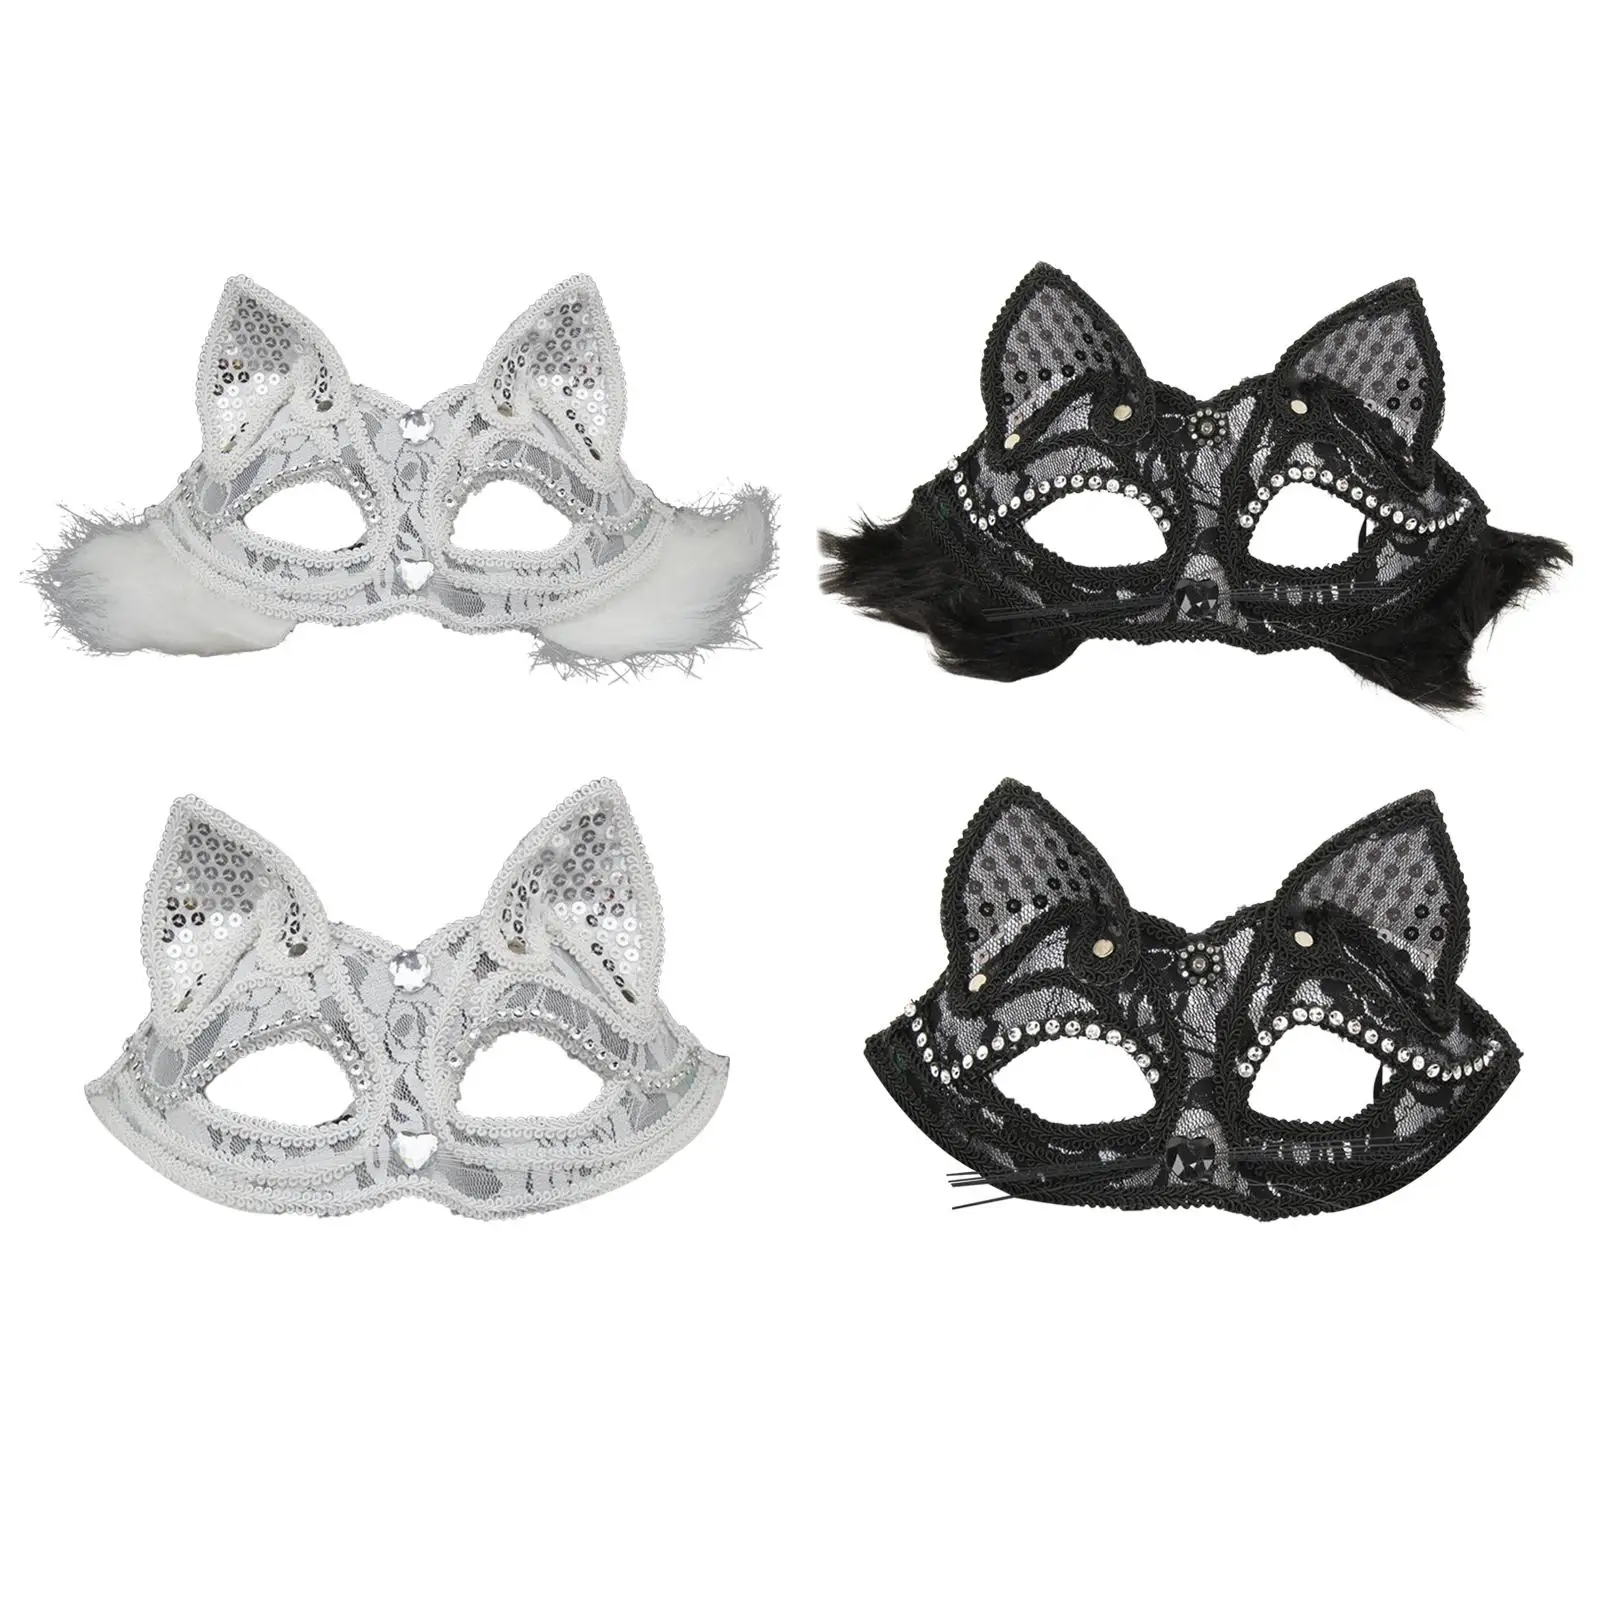 

Женская Маскарадная маска-мяч, косплей, чехол для лица, украшение для девушек, удобная модель для свадьбы, карнавала, выступления на сцене